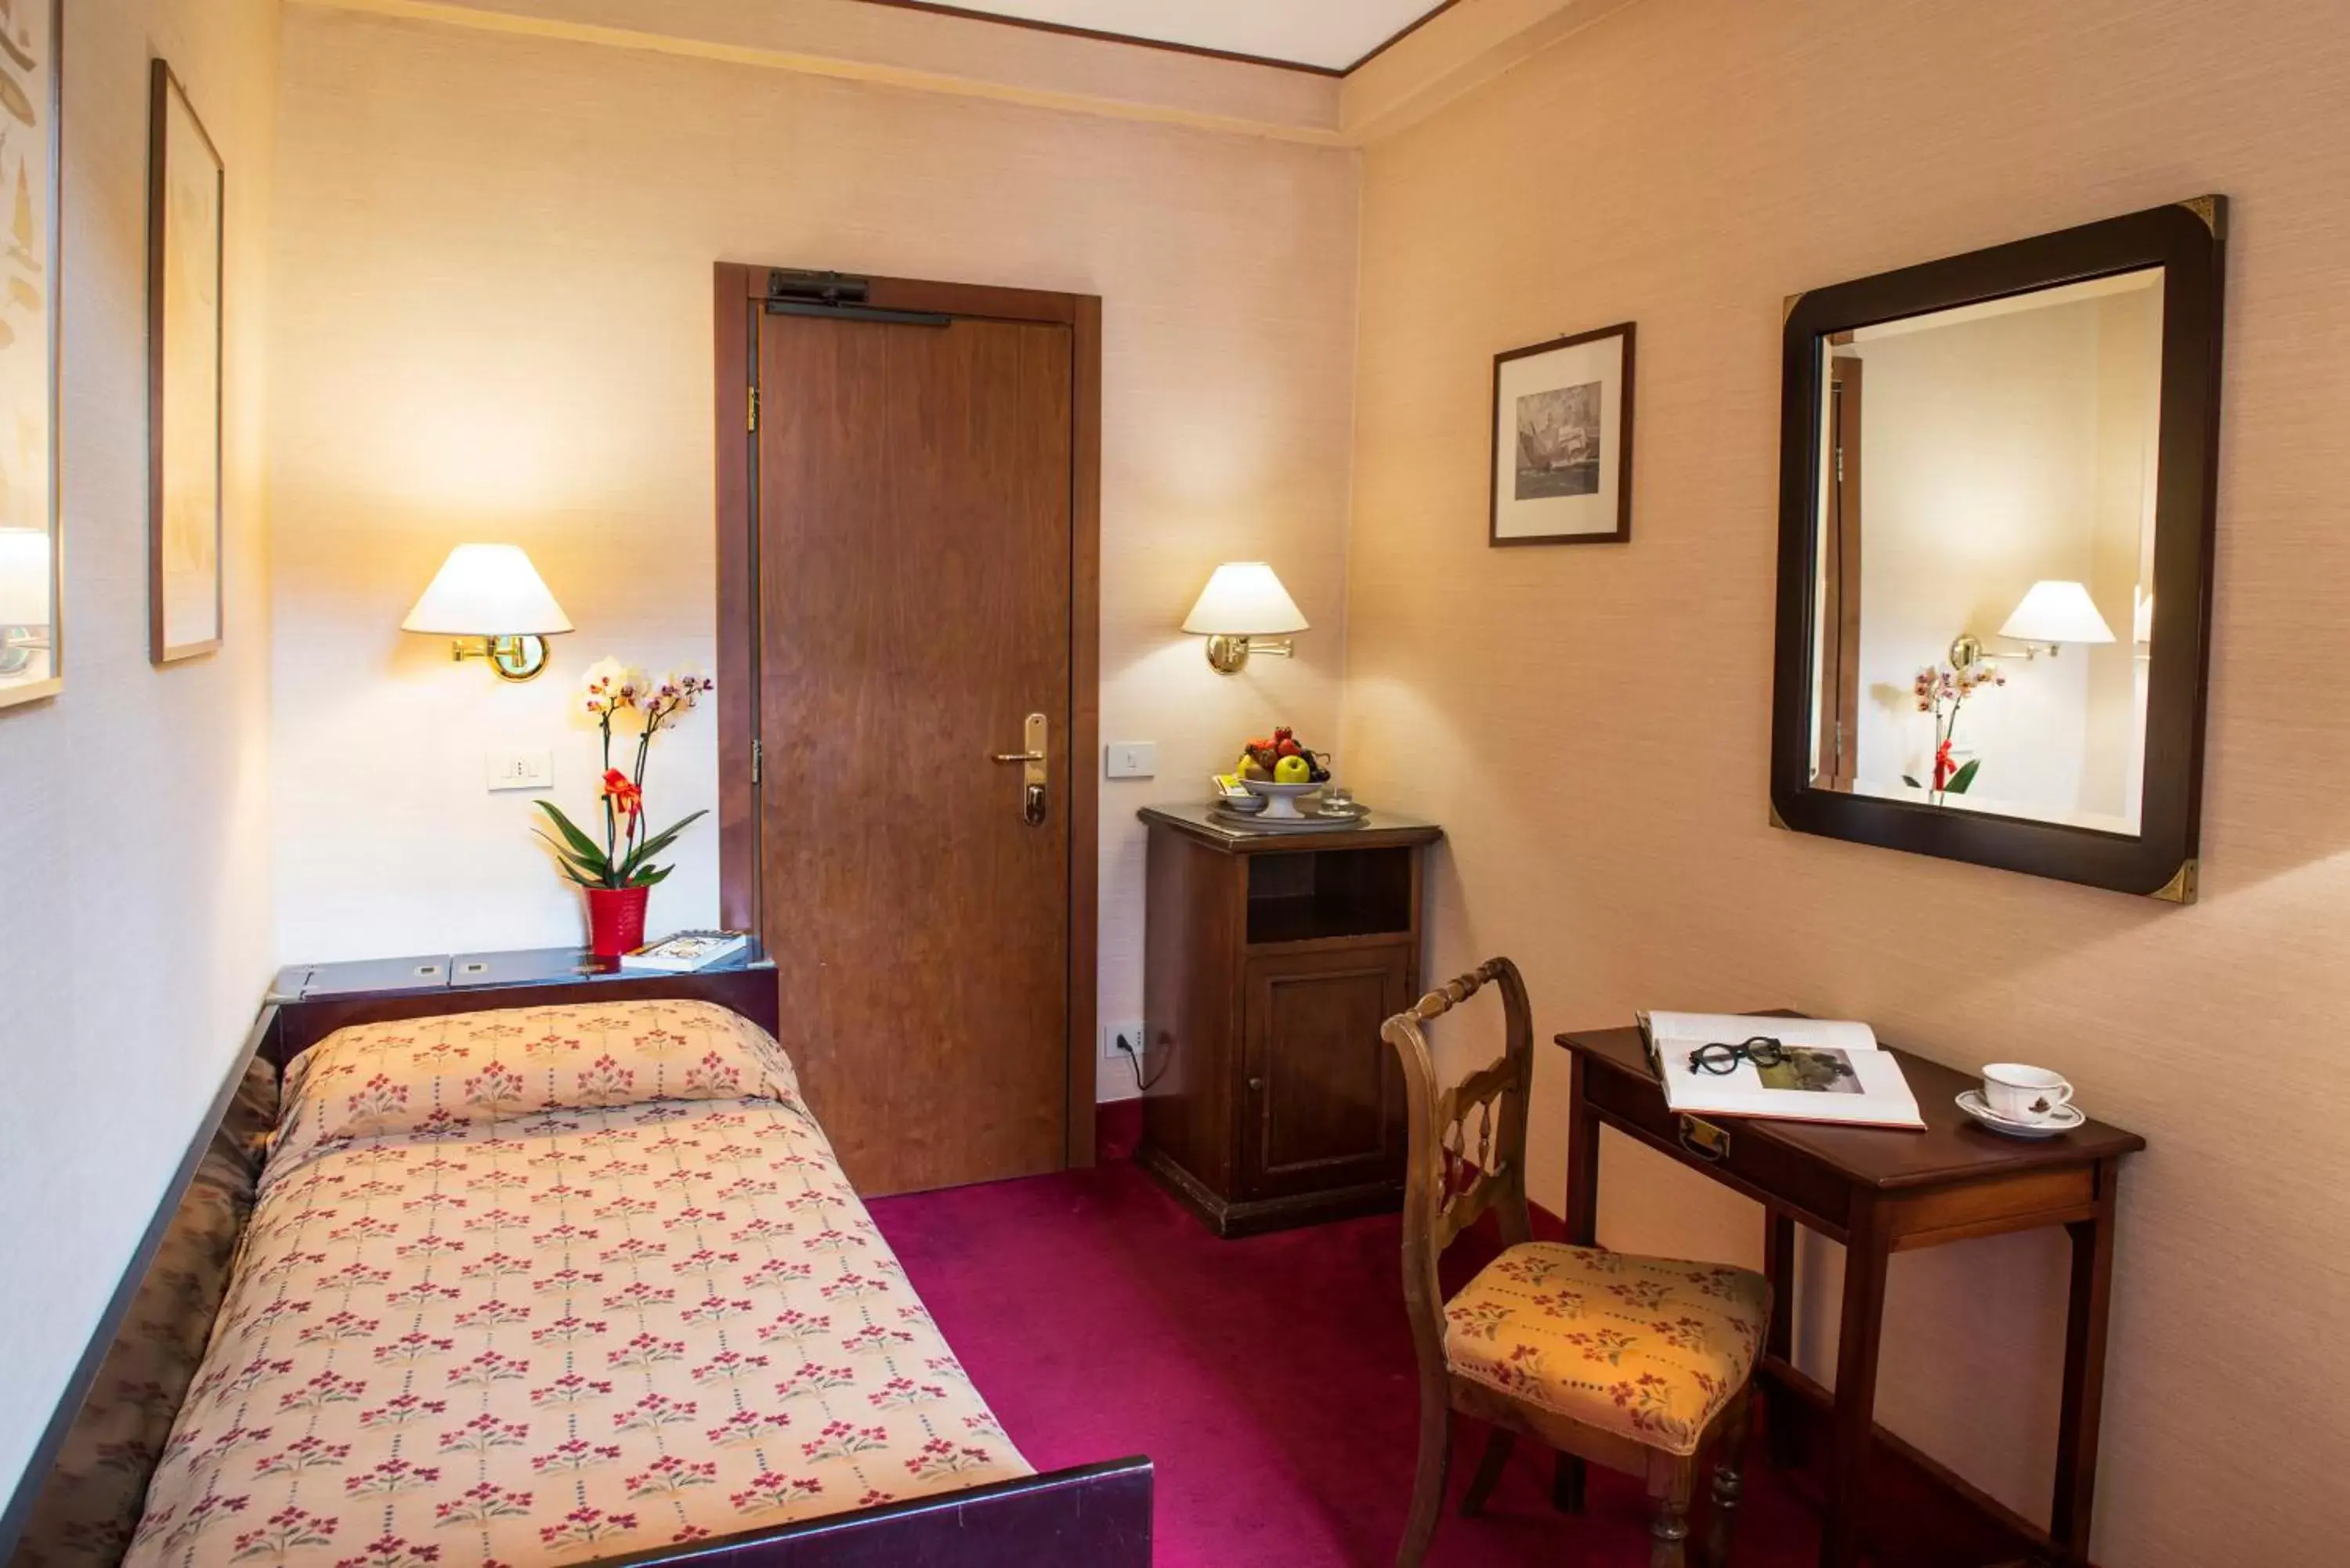 Bed, Room Photo in Hotel Agli Alboretti